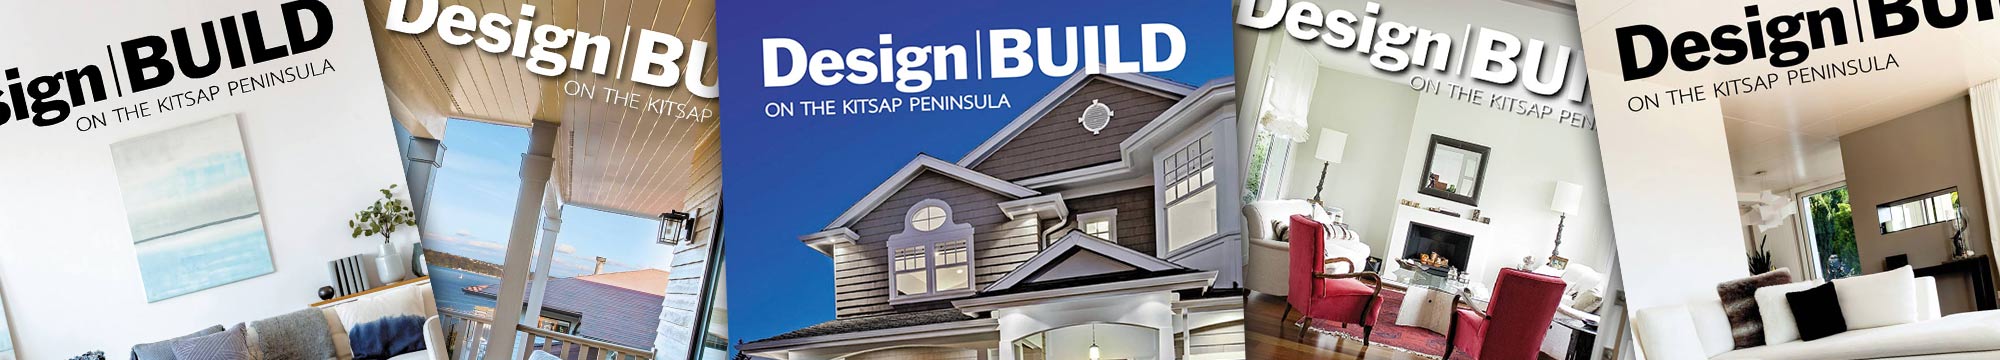 Design|Build Magazine